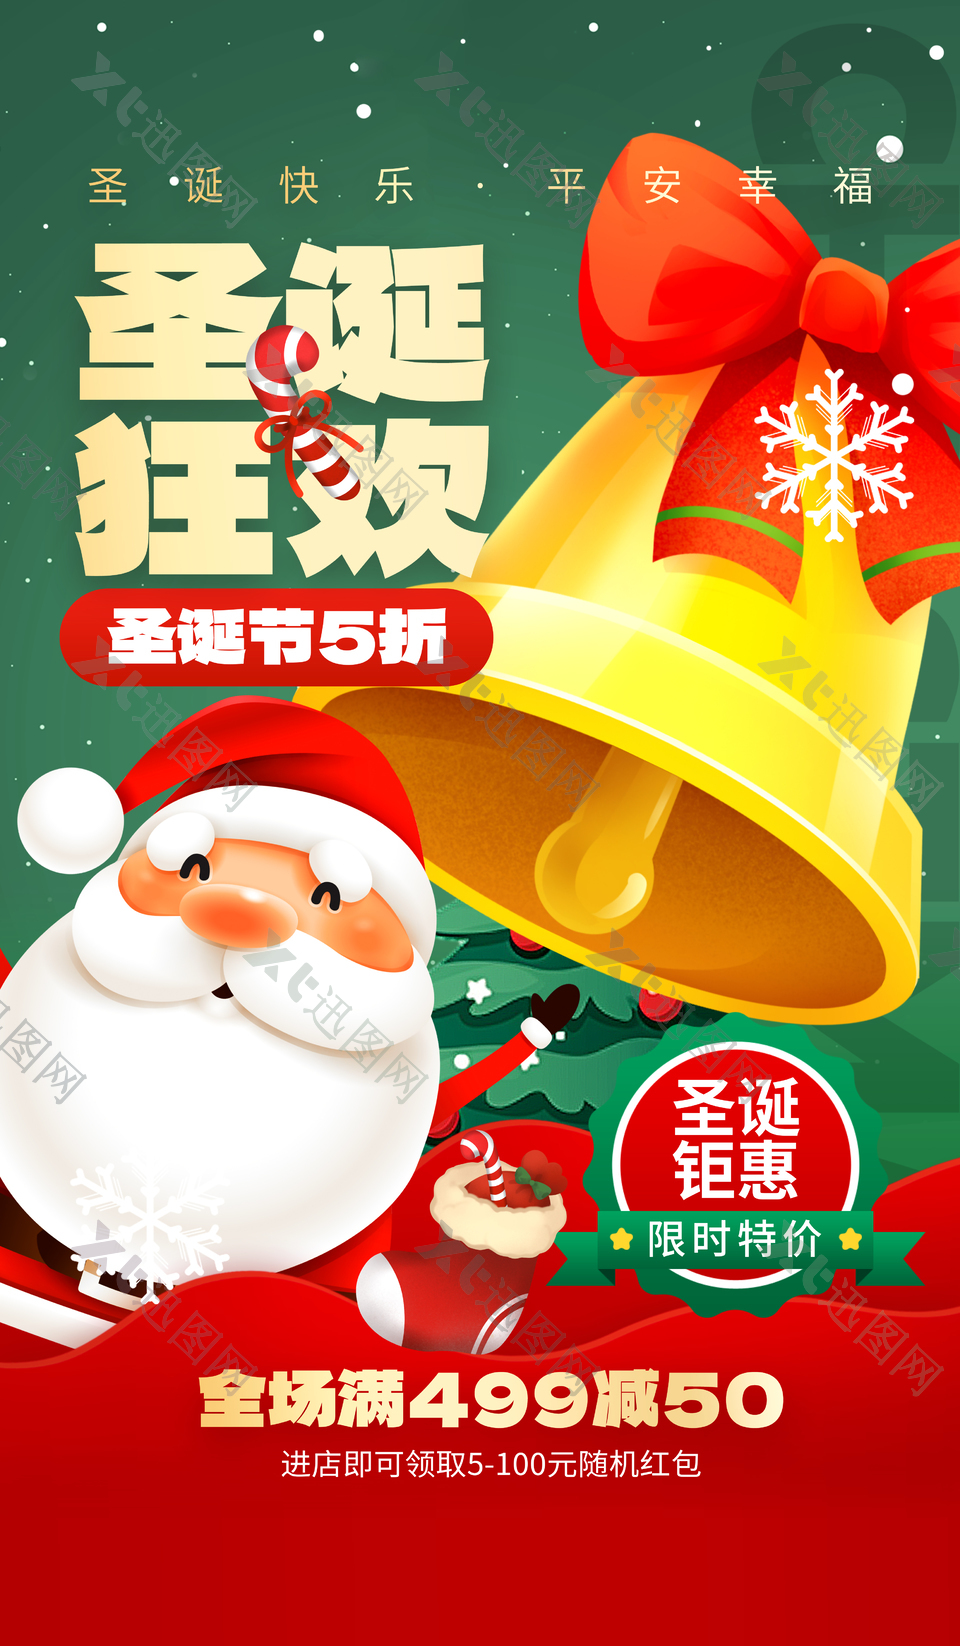 圣诞活动钜惠推广插画海报